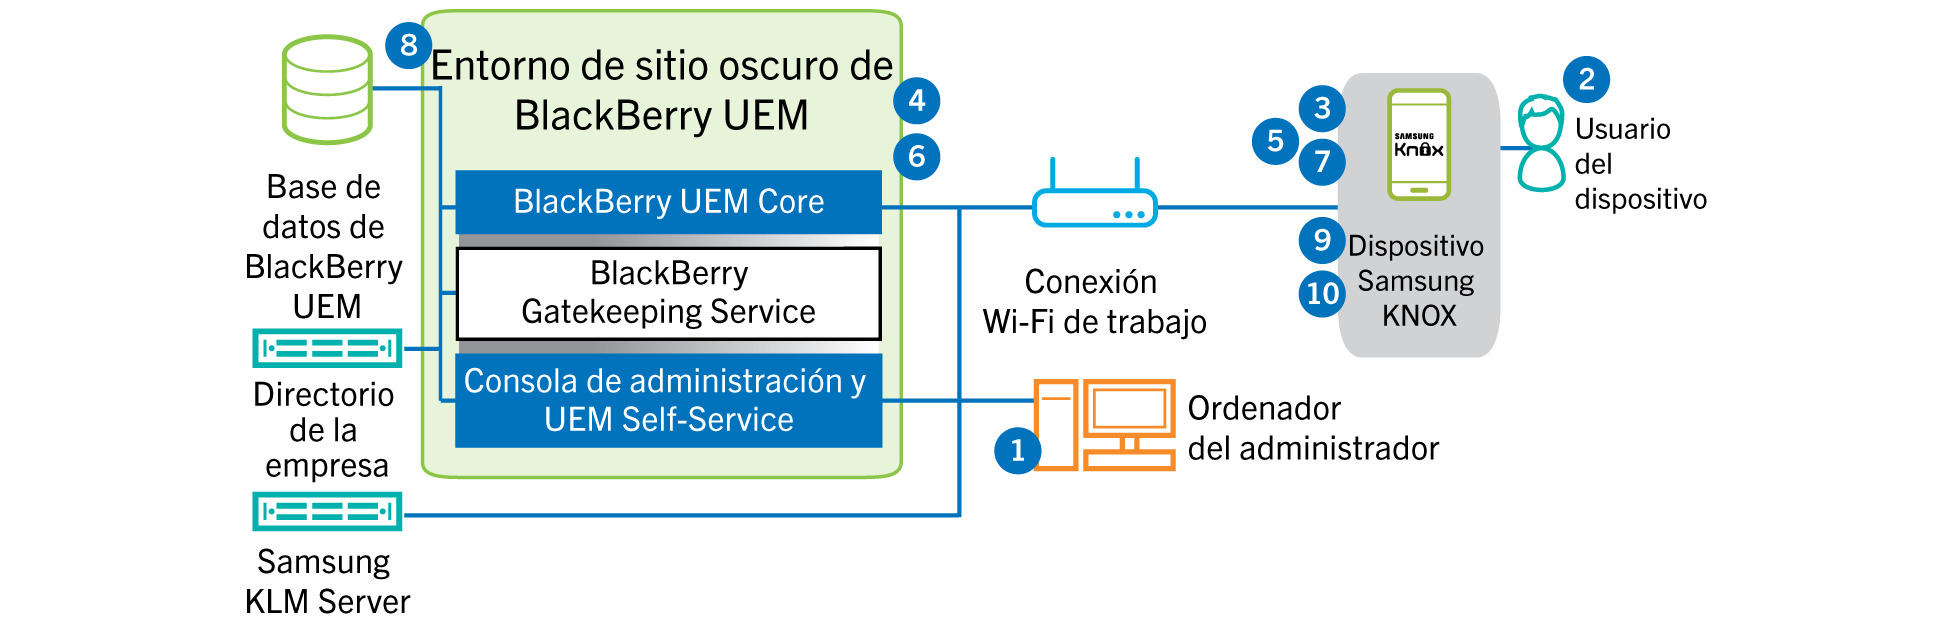 Este diagrama muestra los pasos y los componentes de BlackBerry UEM que se utilizan a la hora de activar un dispositivo con Samsung Knox Workspace en un entorno de sitio oscuro.